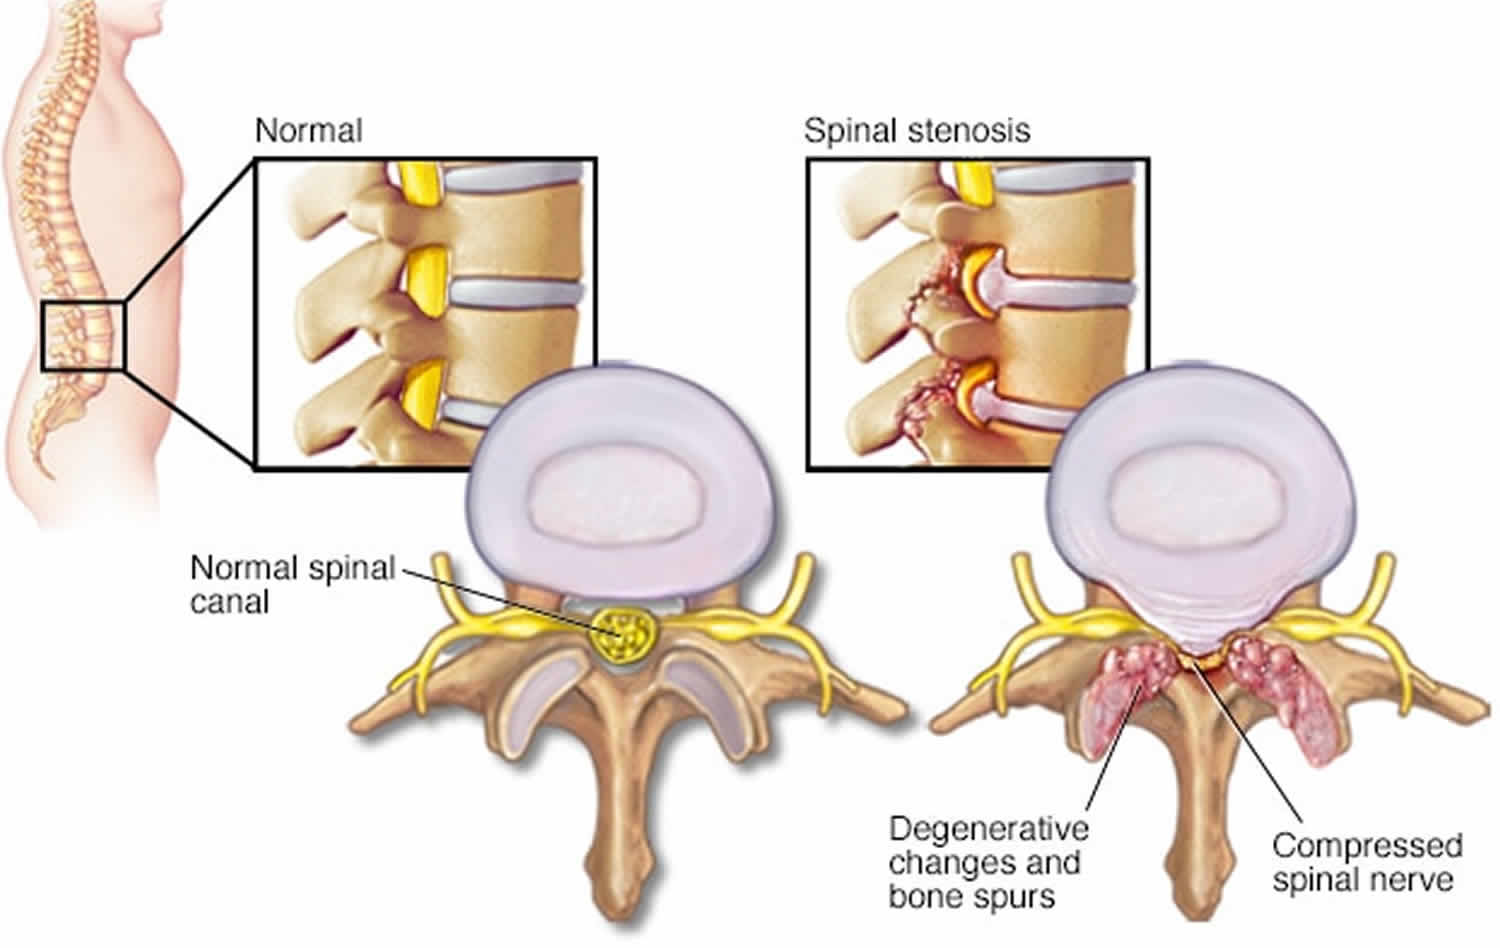 Lumbar neural foraminal stenosis